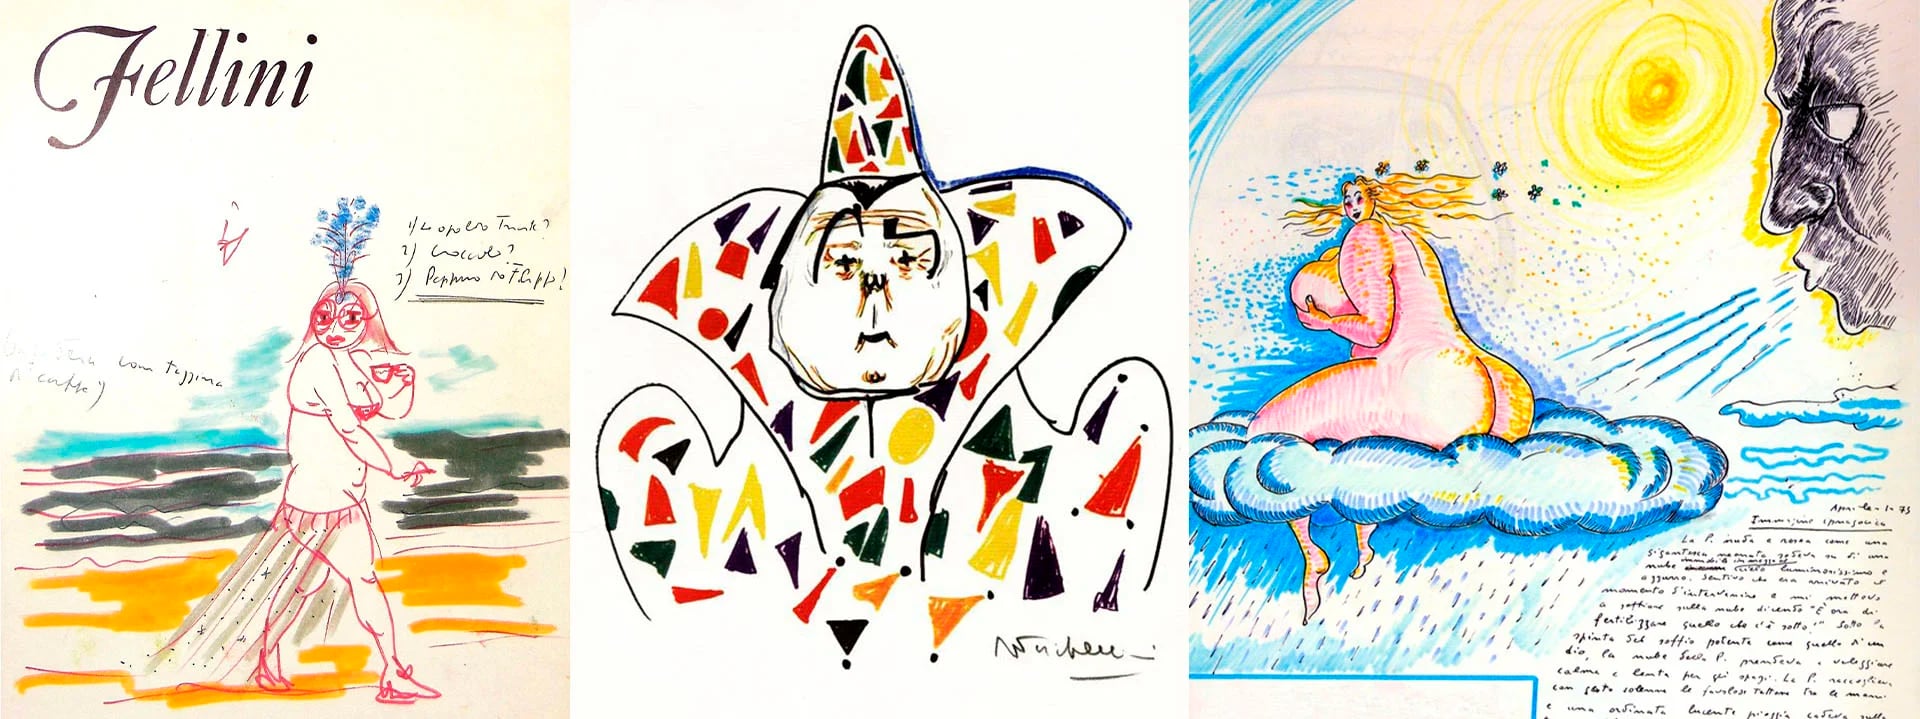 Tapa del libro "Fellini Working Drawings 1952-1982" junto a ilustraciones para las películas "Fellini I Clowns" y otra publicada en "El libro de los sueños"  
